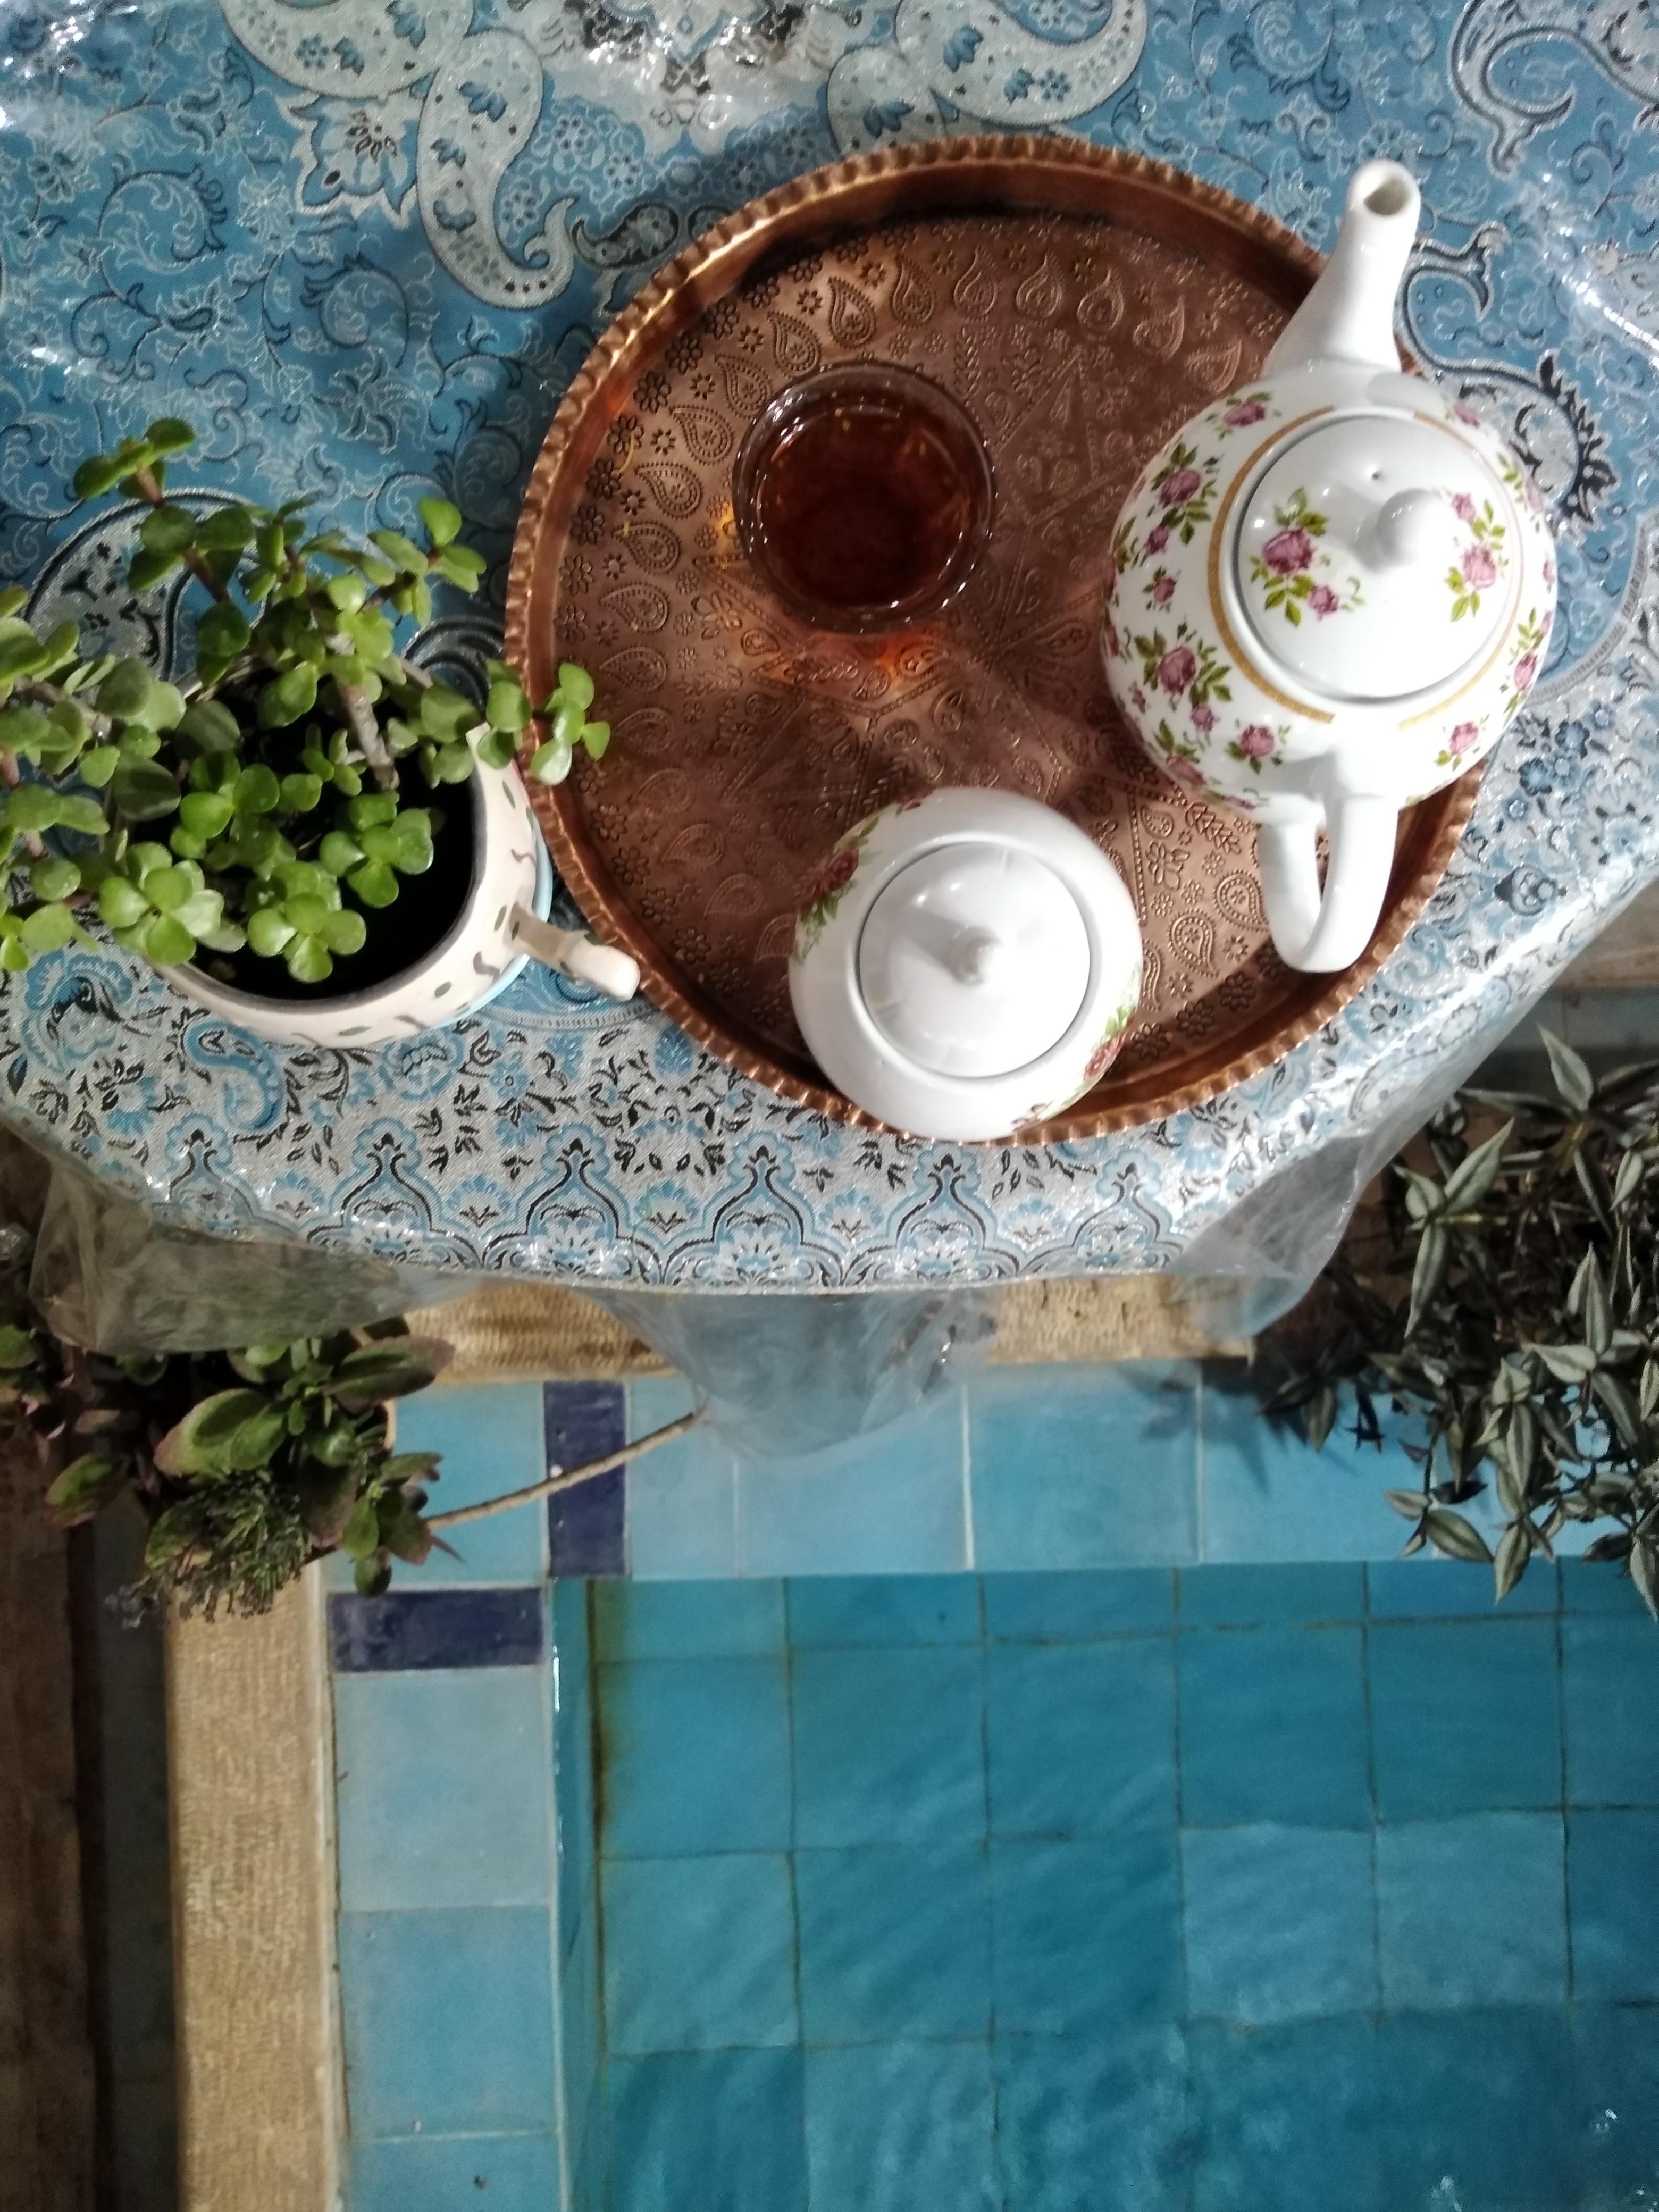 اقامتگاه بوم گردی آنا در شیراز